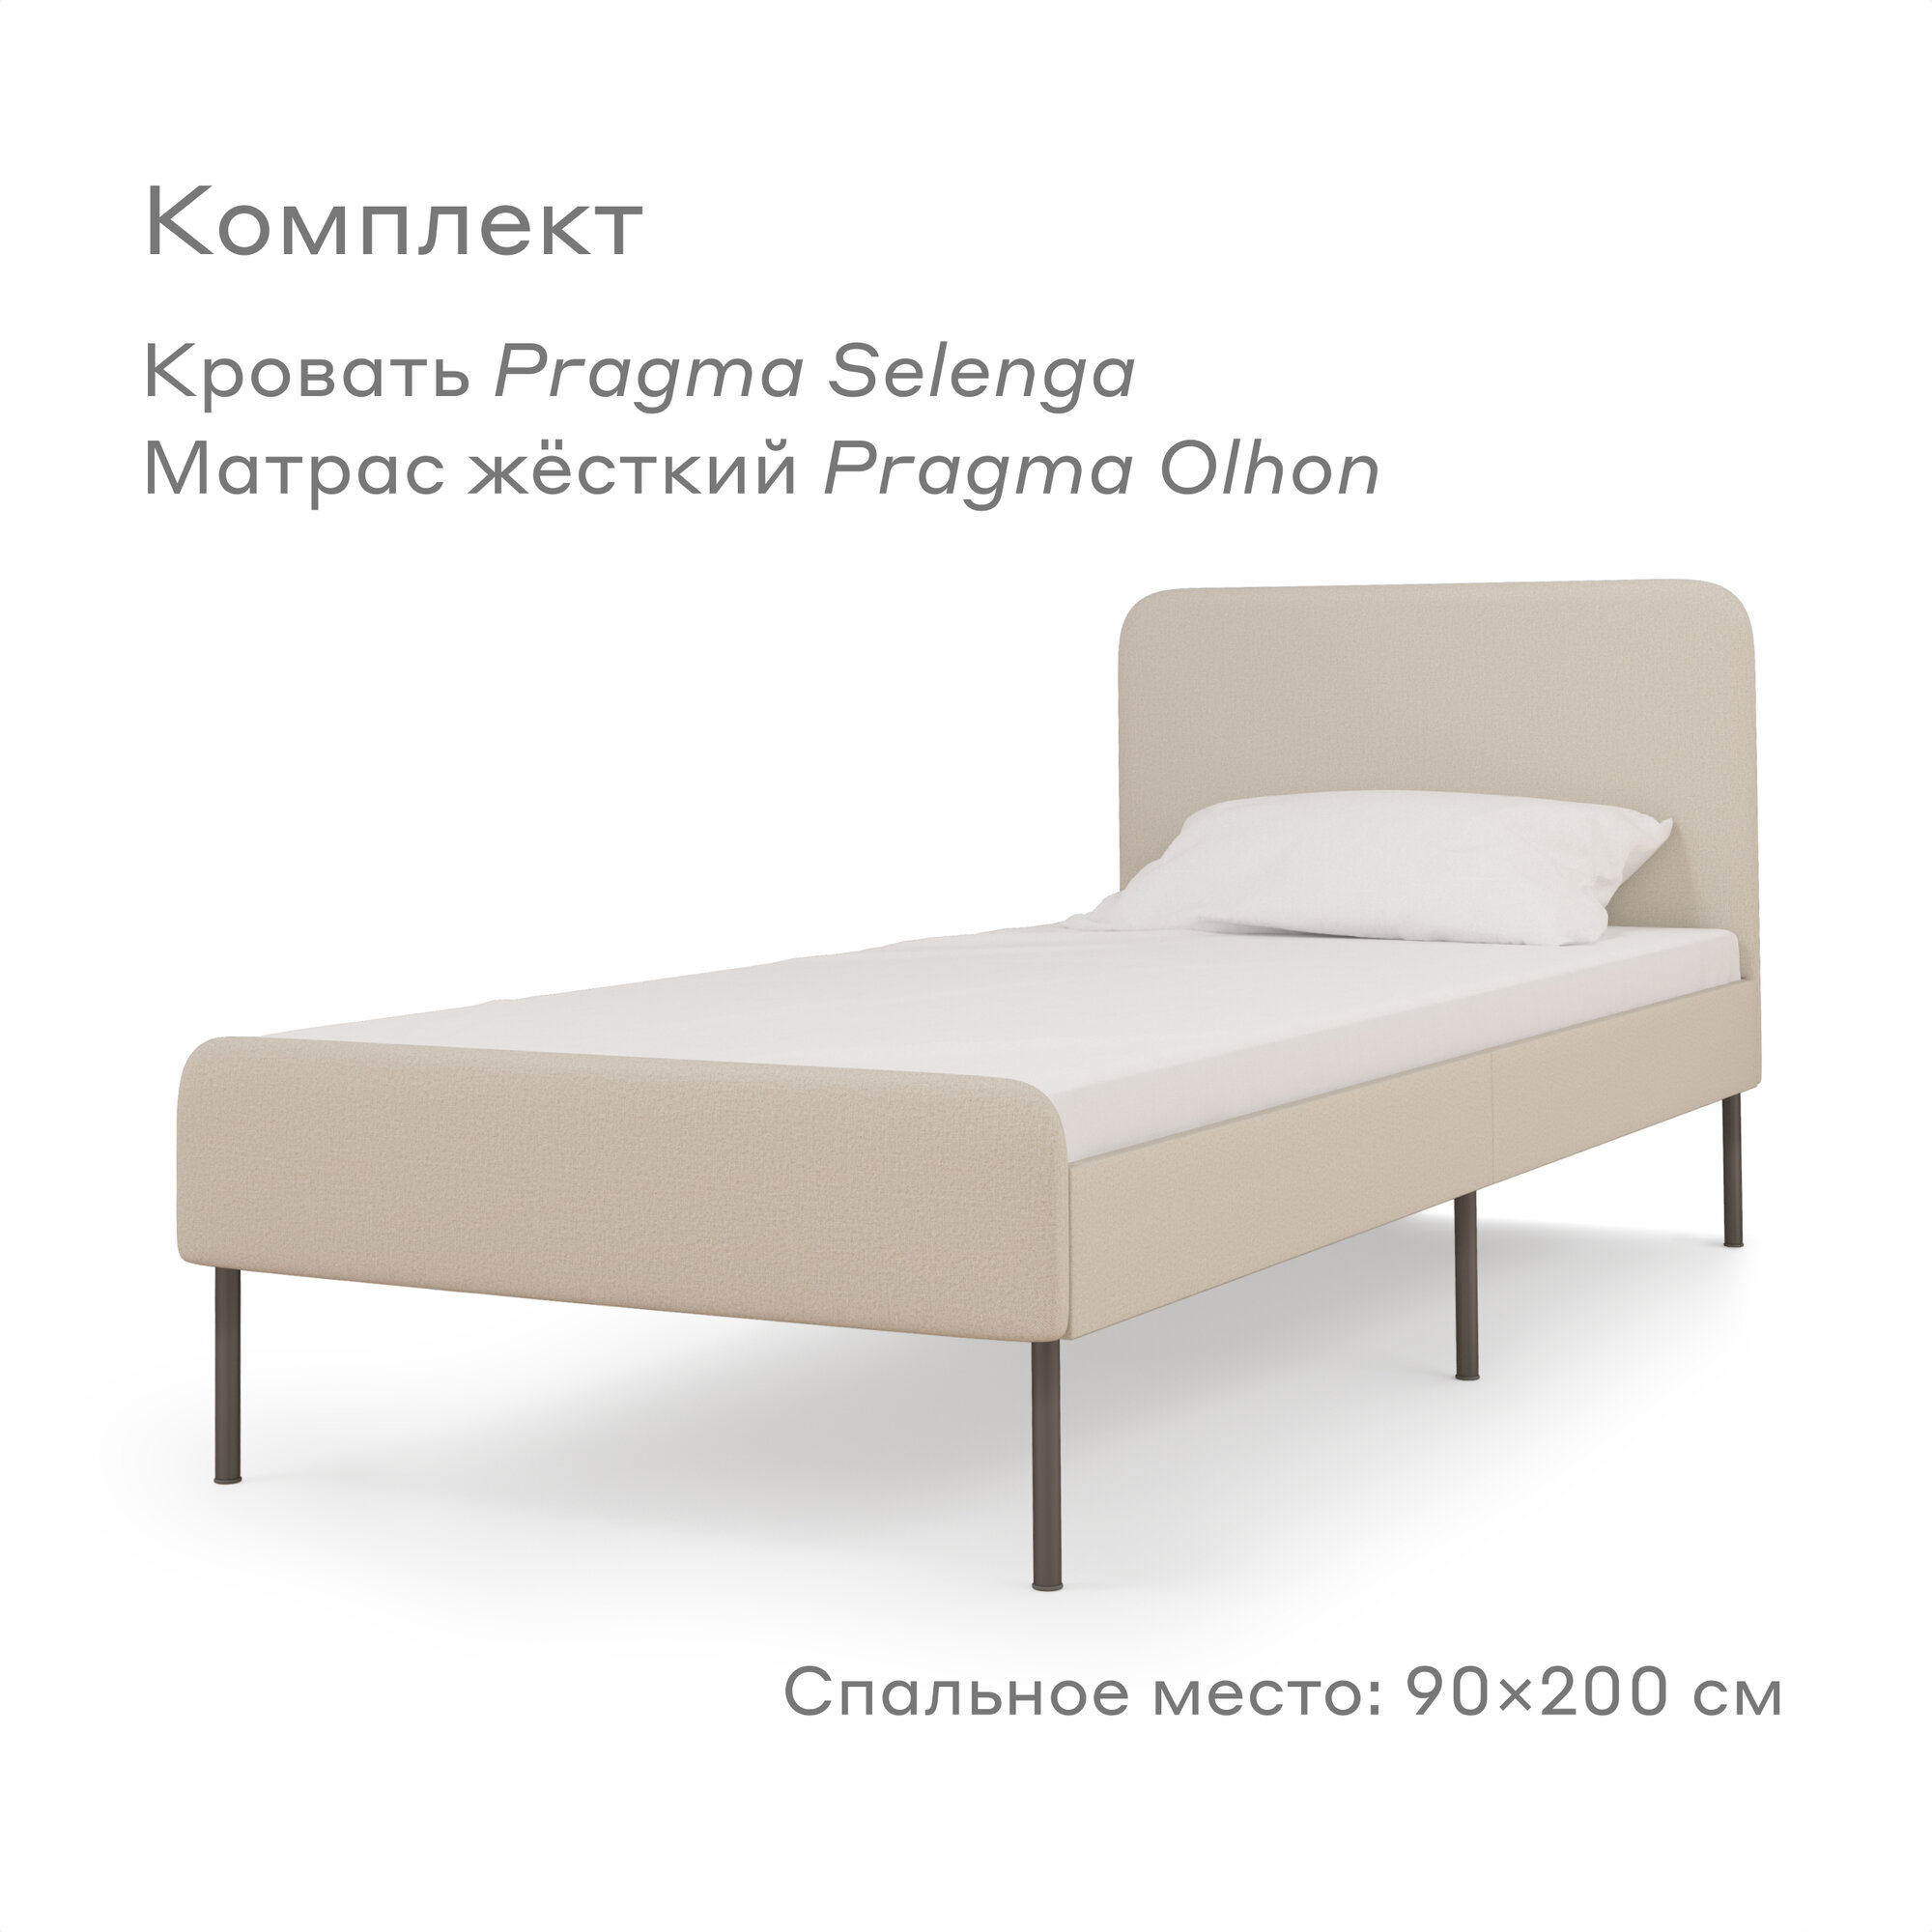 Кровать Pragma Selenga/Olhon с жестким матрасом, размер (ДхШ): 206х94 см, спальное место (ДхШ): 200х90 см, обивка: велюр, с матрасом, цвет: светло-бежевый